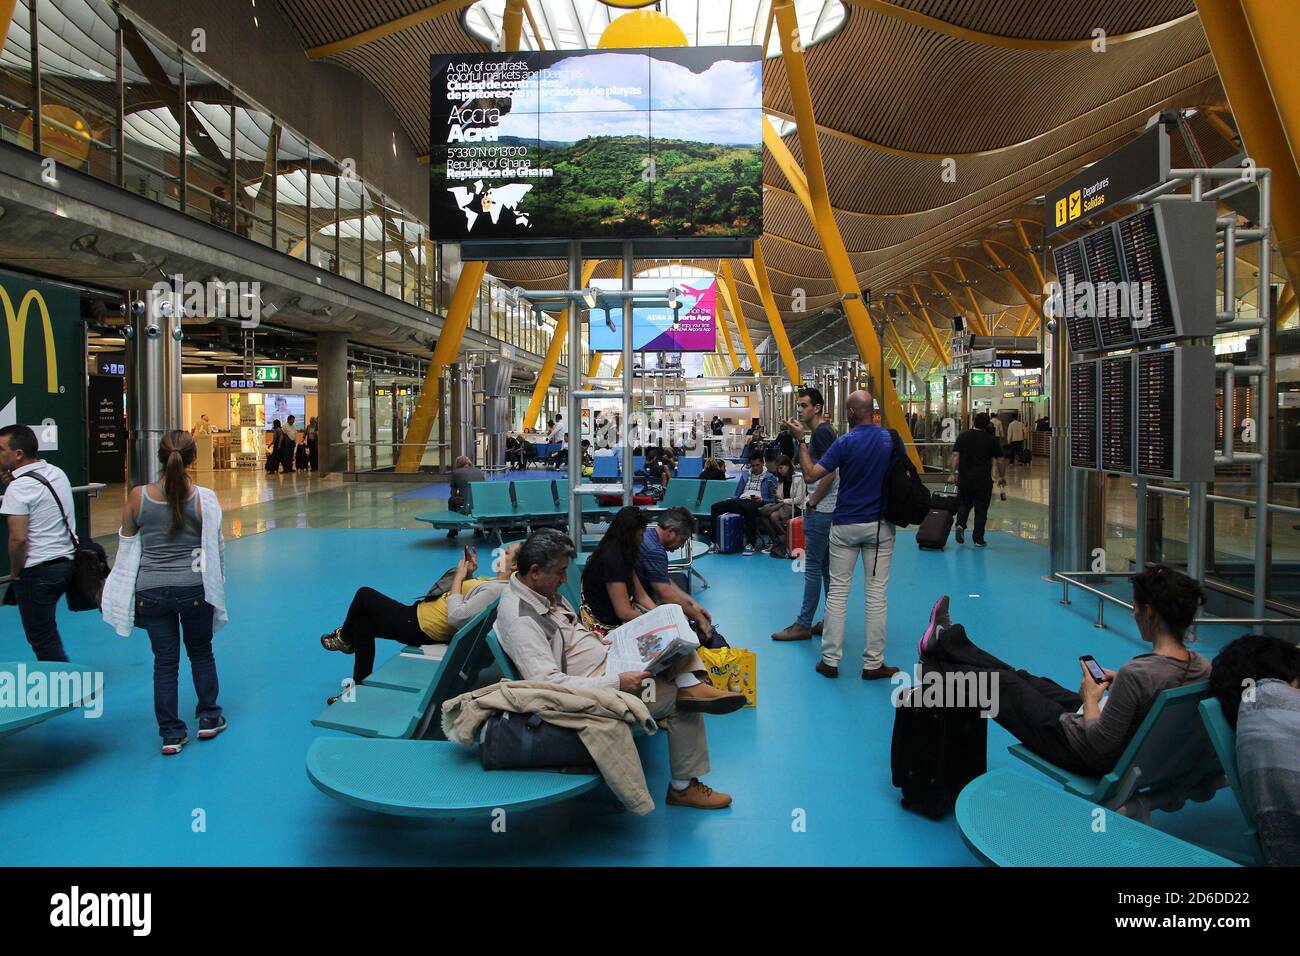 MADRID, Spanien - 20. OKTOBER 2014: Passagiere besuchen Sie Stift 4 am Flughafen Madrid Barajas entfernt. Die berühmten Terminal 4 wurde von Antonio Lamela und Reich konzipiert Stockfoto